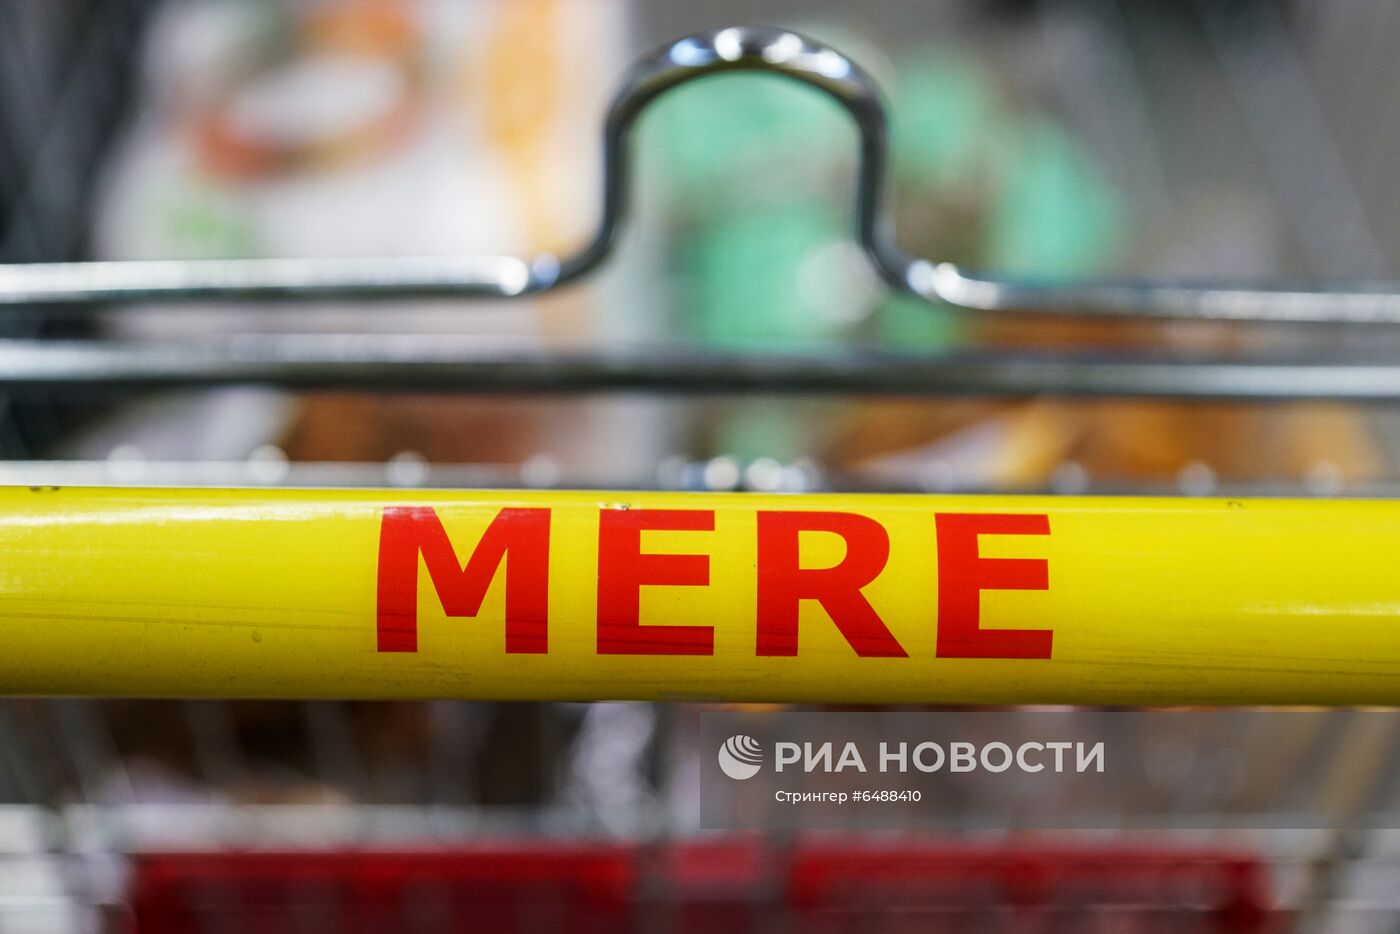 Магазин российской торговой сети "Светофор" (Mere) открылся в Риге